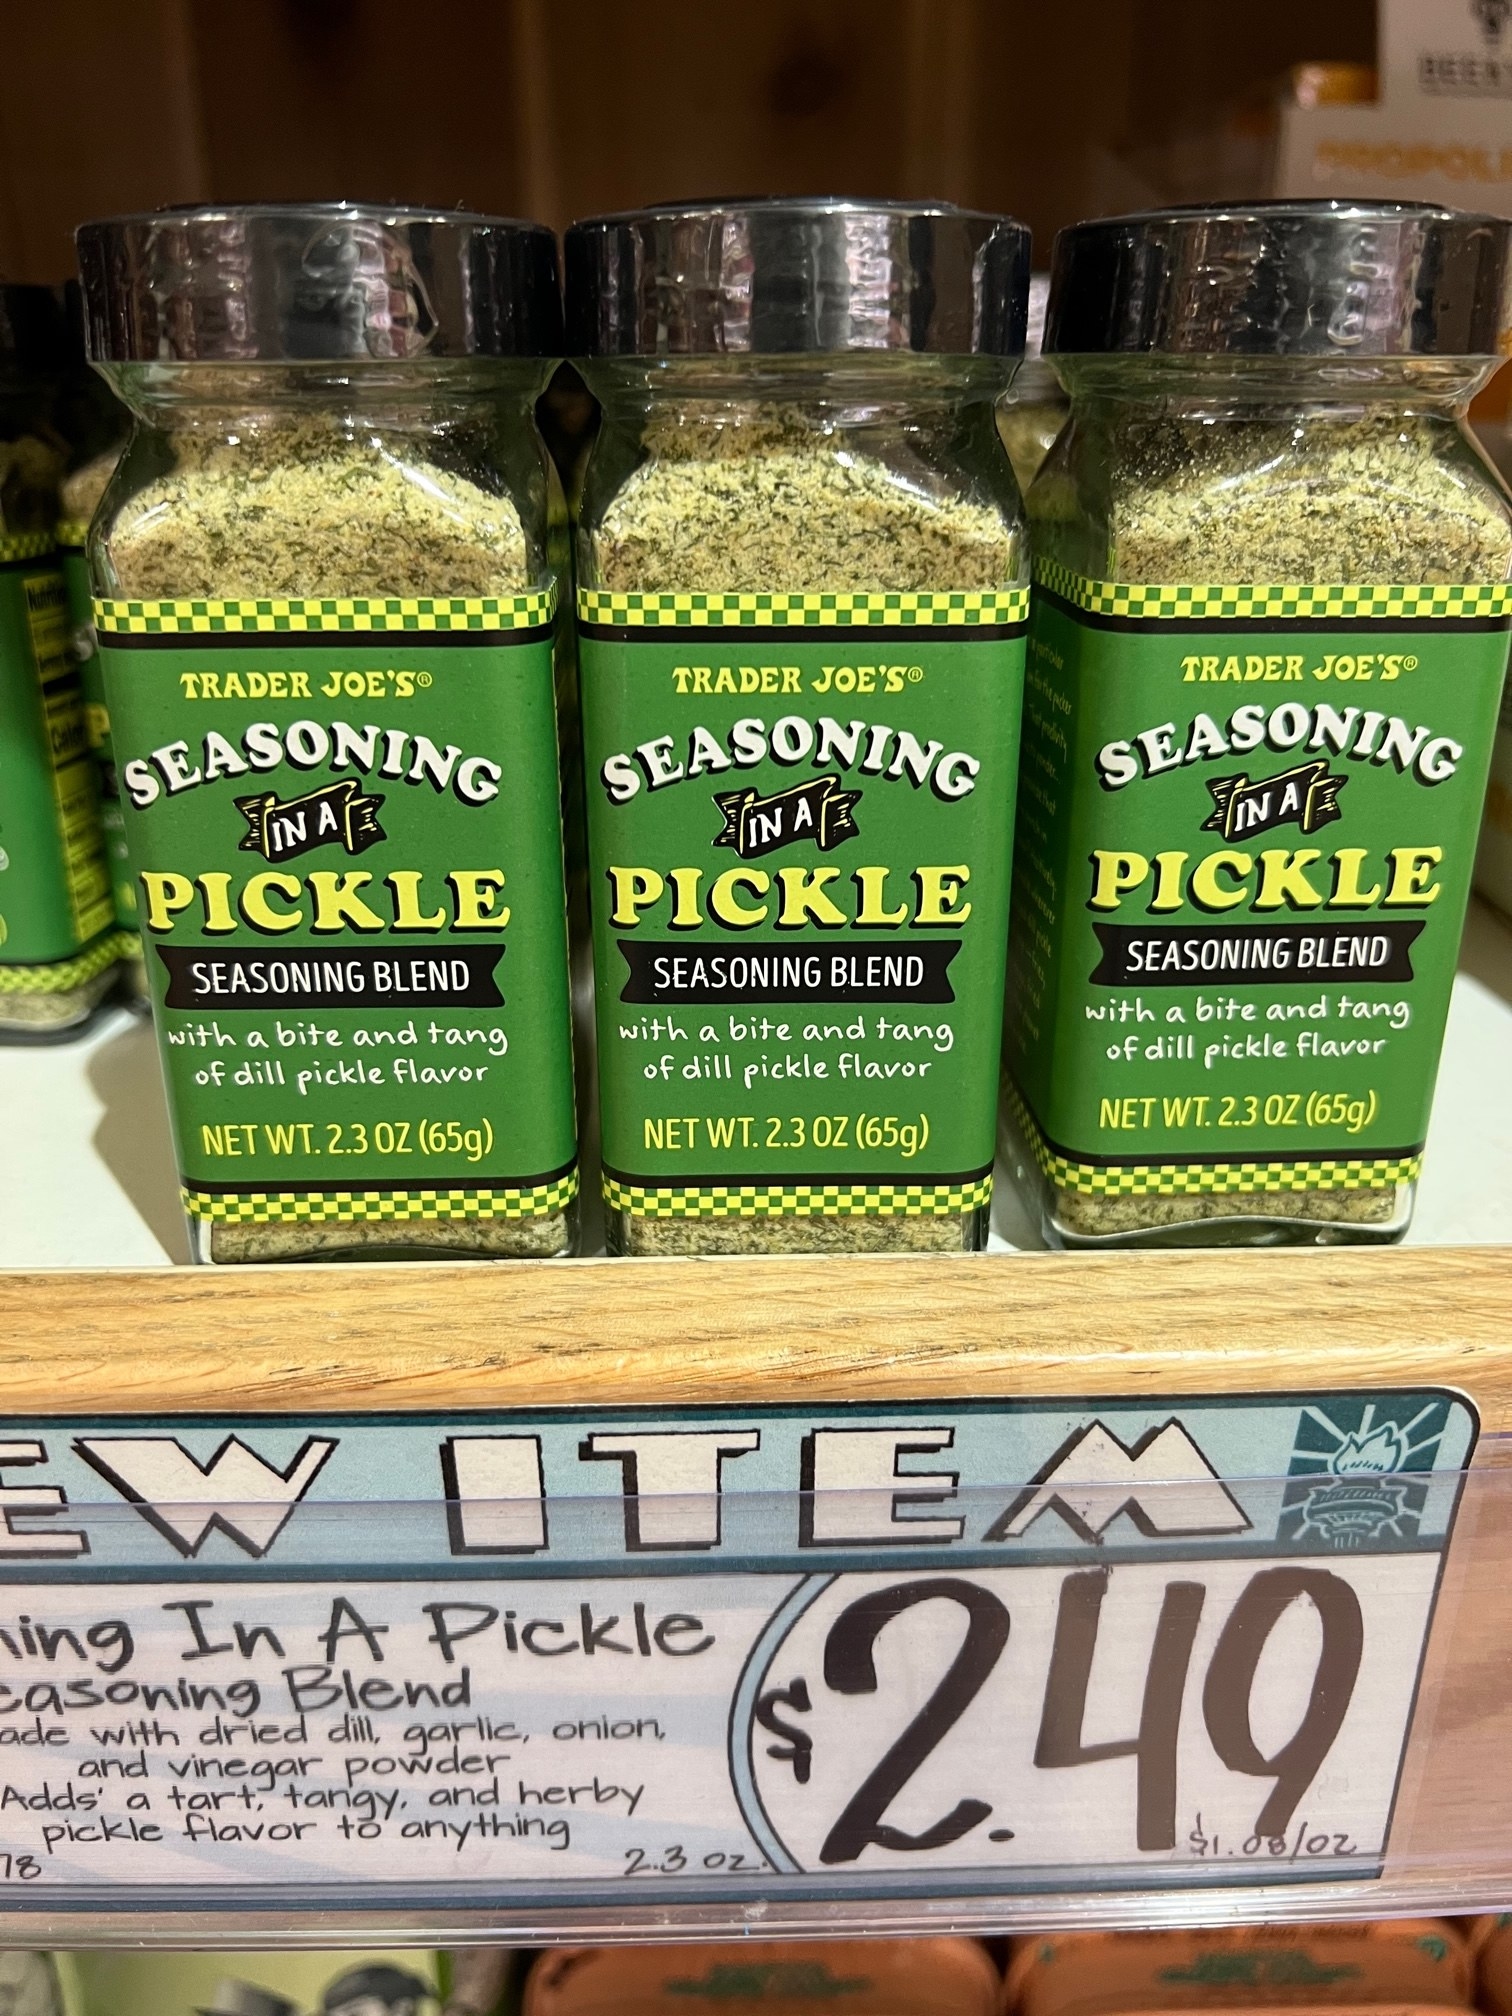 In a Pickle Seasoning Blend